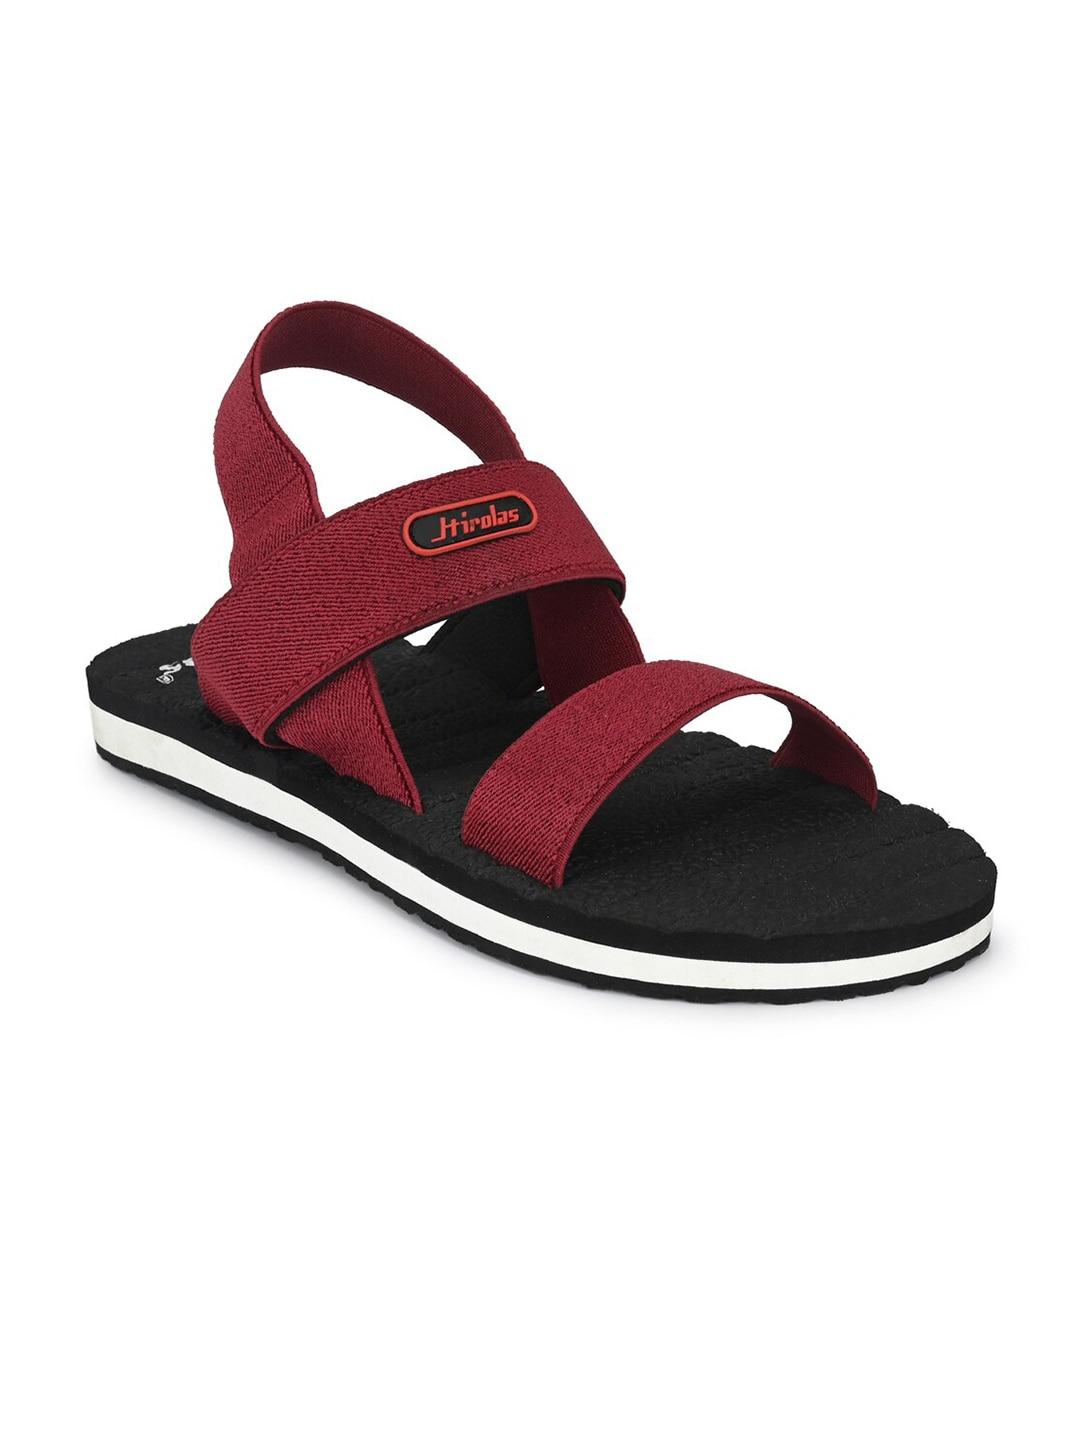 hirolas-men-maroon-&-black-sports-sandals